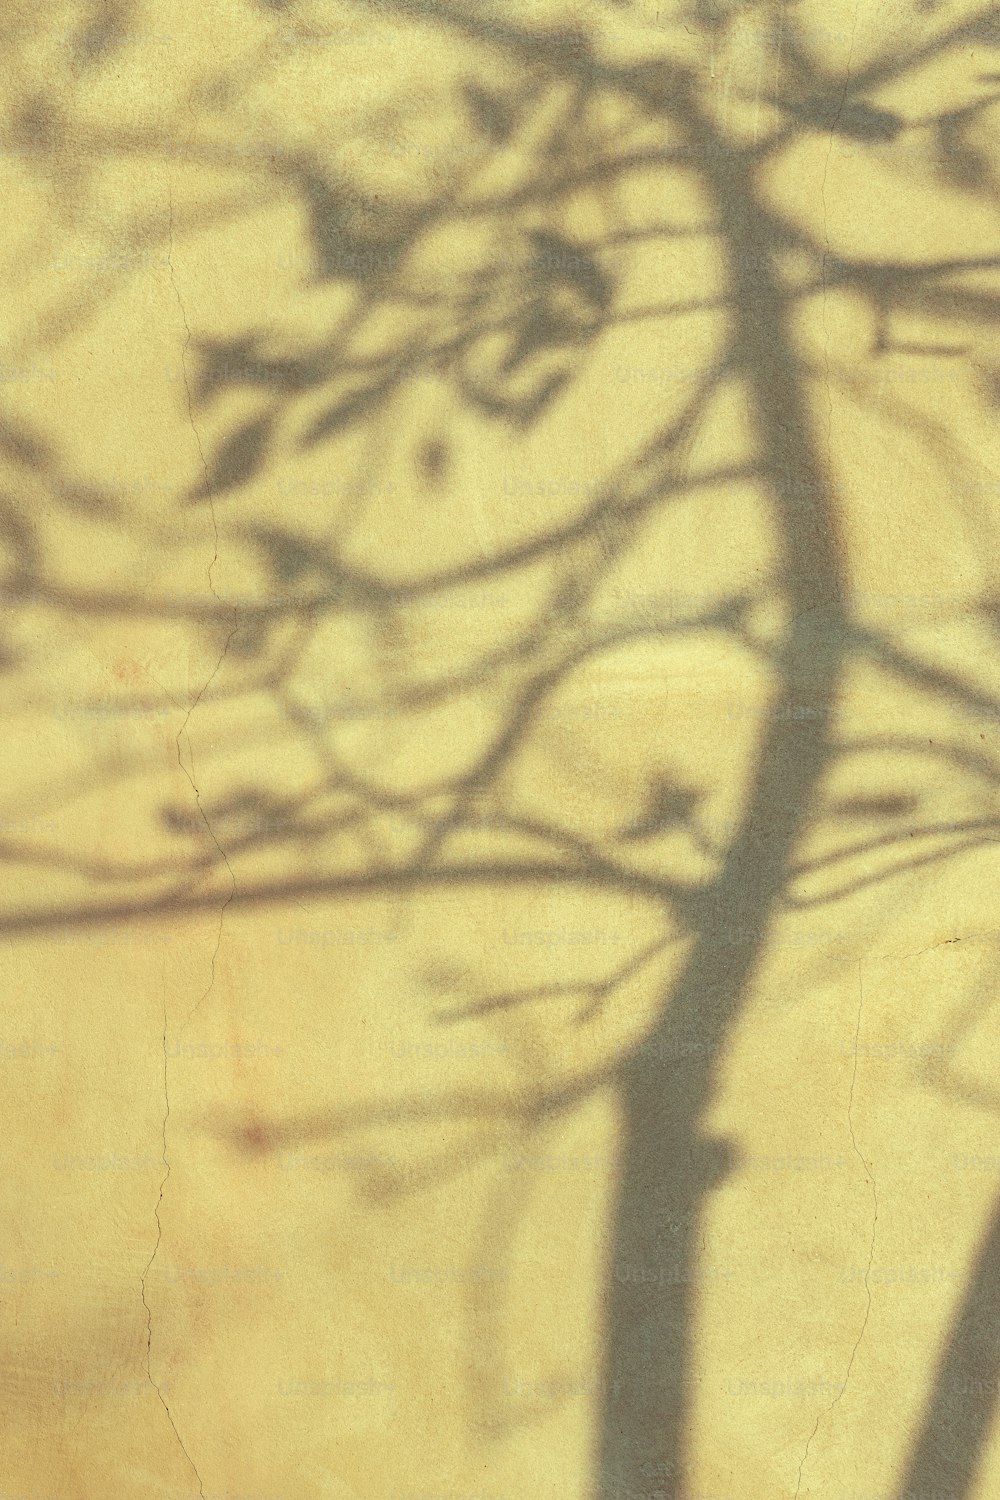 Ein Schatten eines Baumes an einer Wand